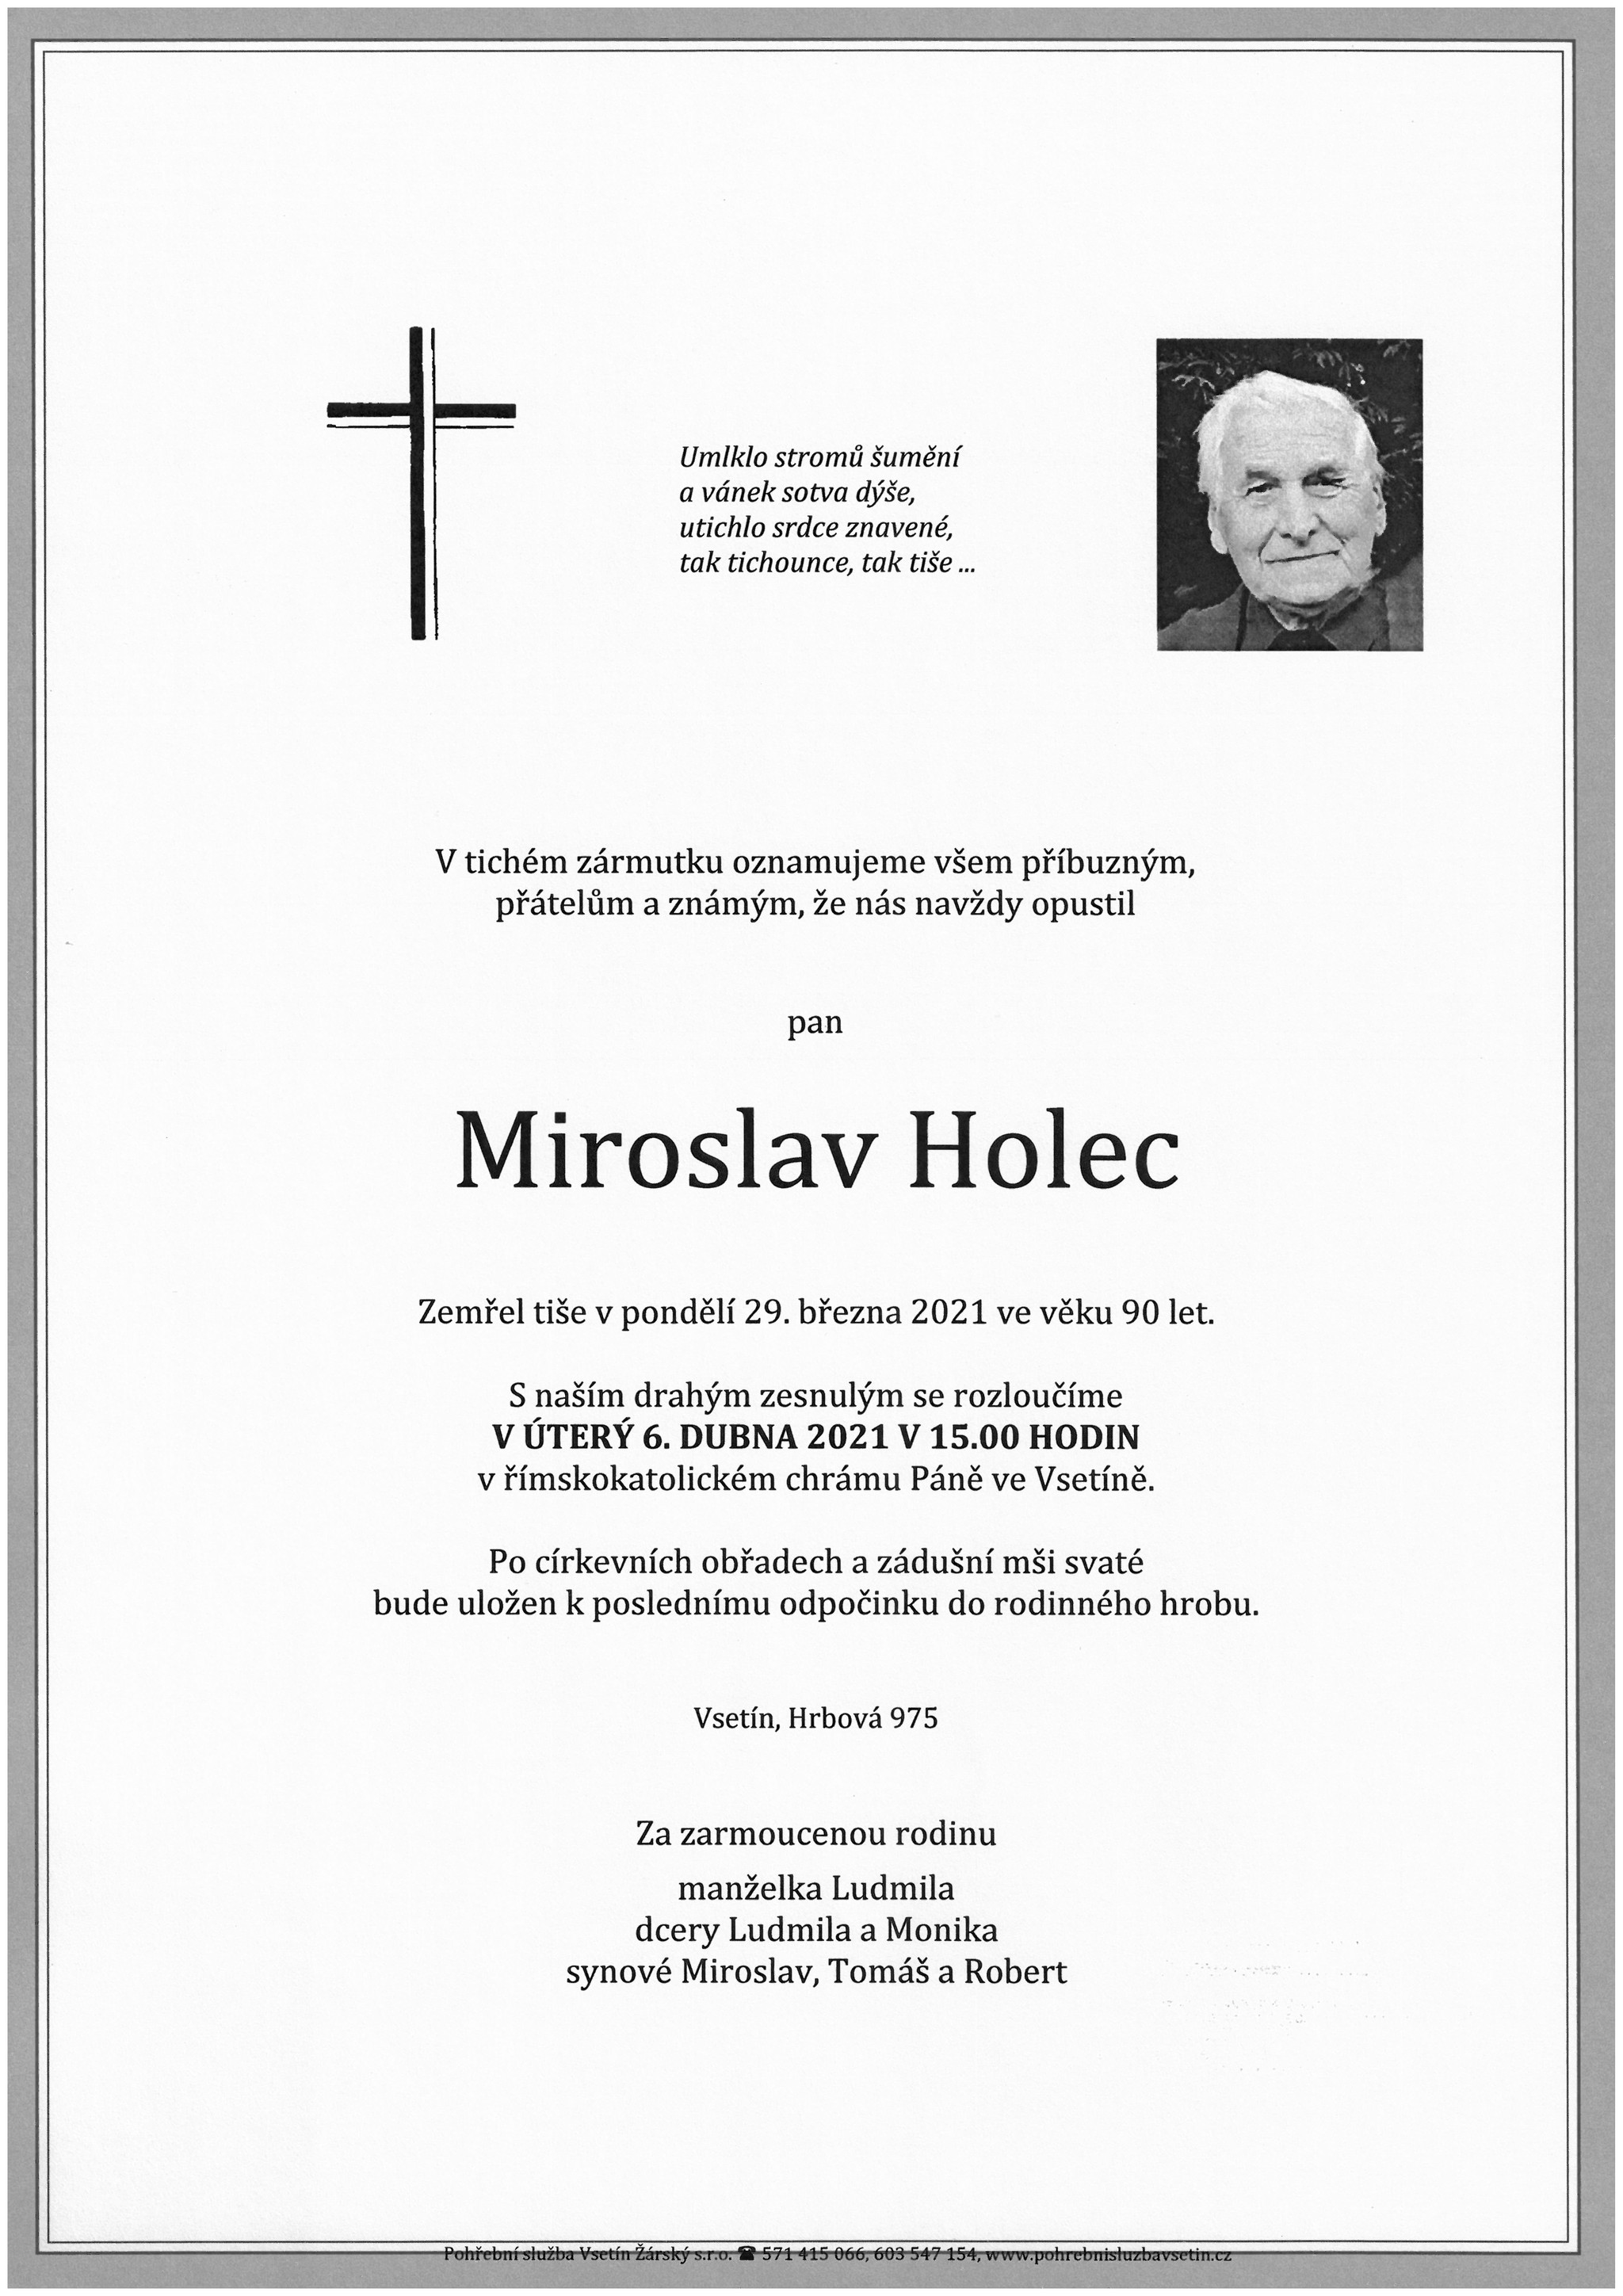 Miroslav Holec